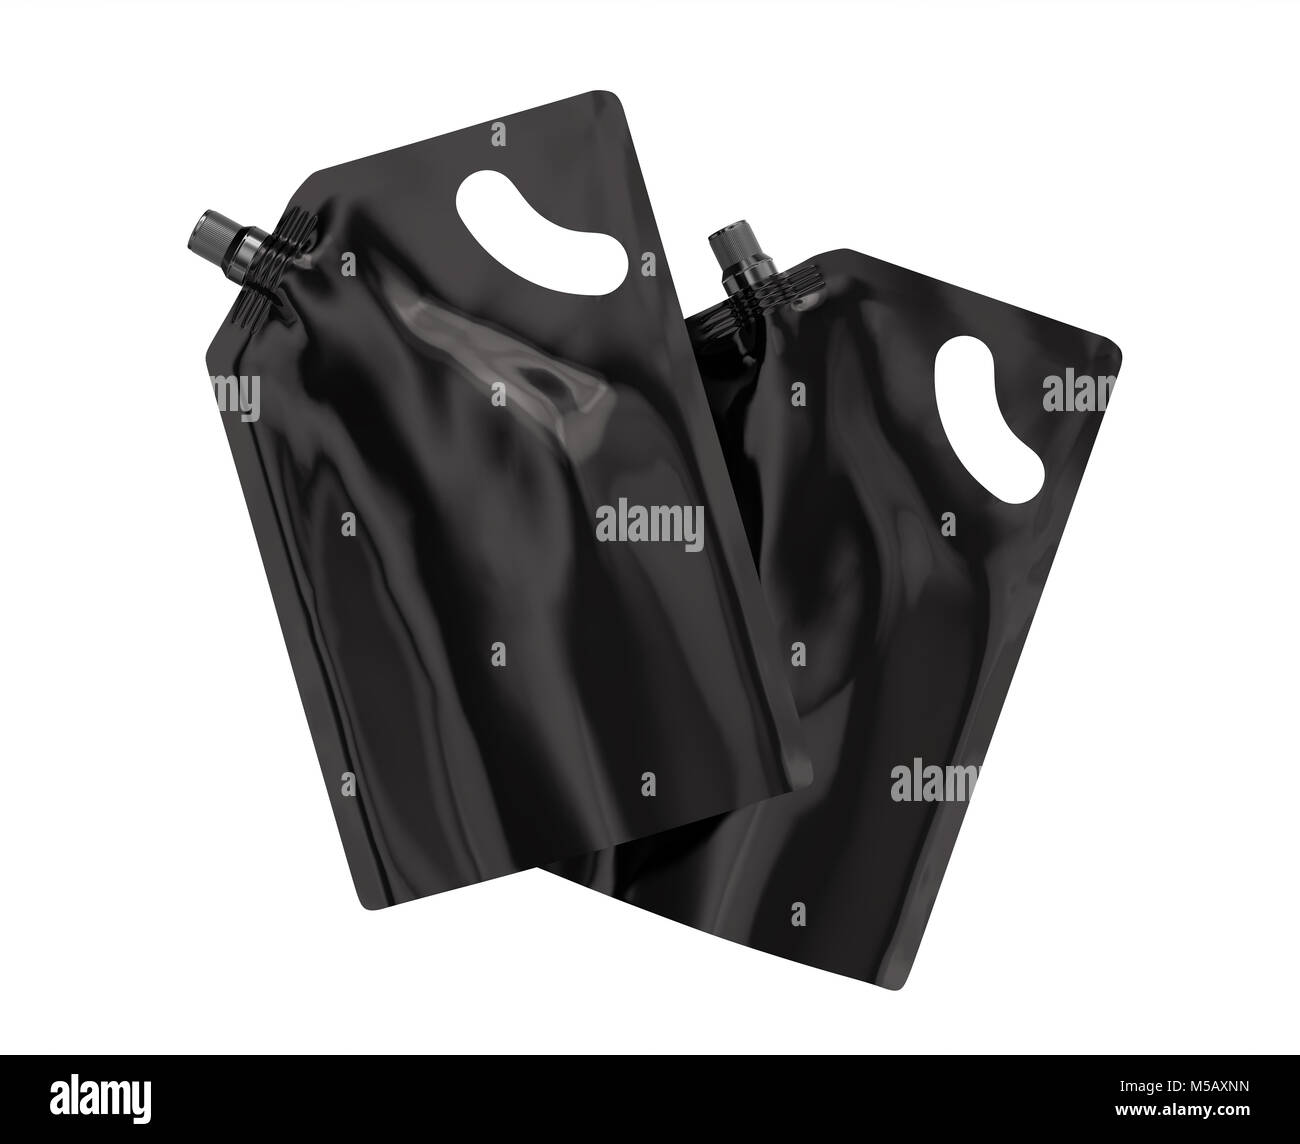 Waschmittel refill Paket, 3D-Render schwarz Standbeutel Tasche mockup mit Kappe, die in der Luft schweben eingestellt Stockfoto